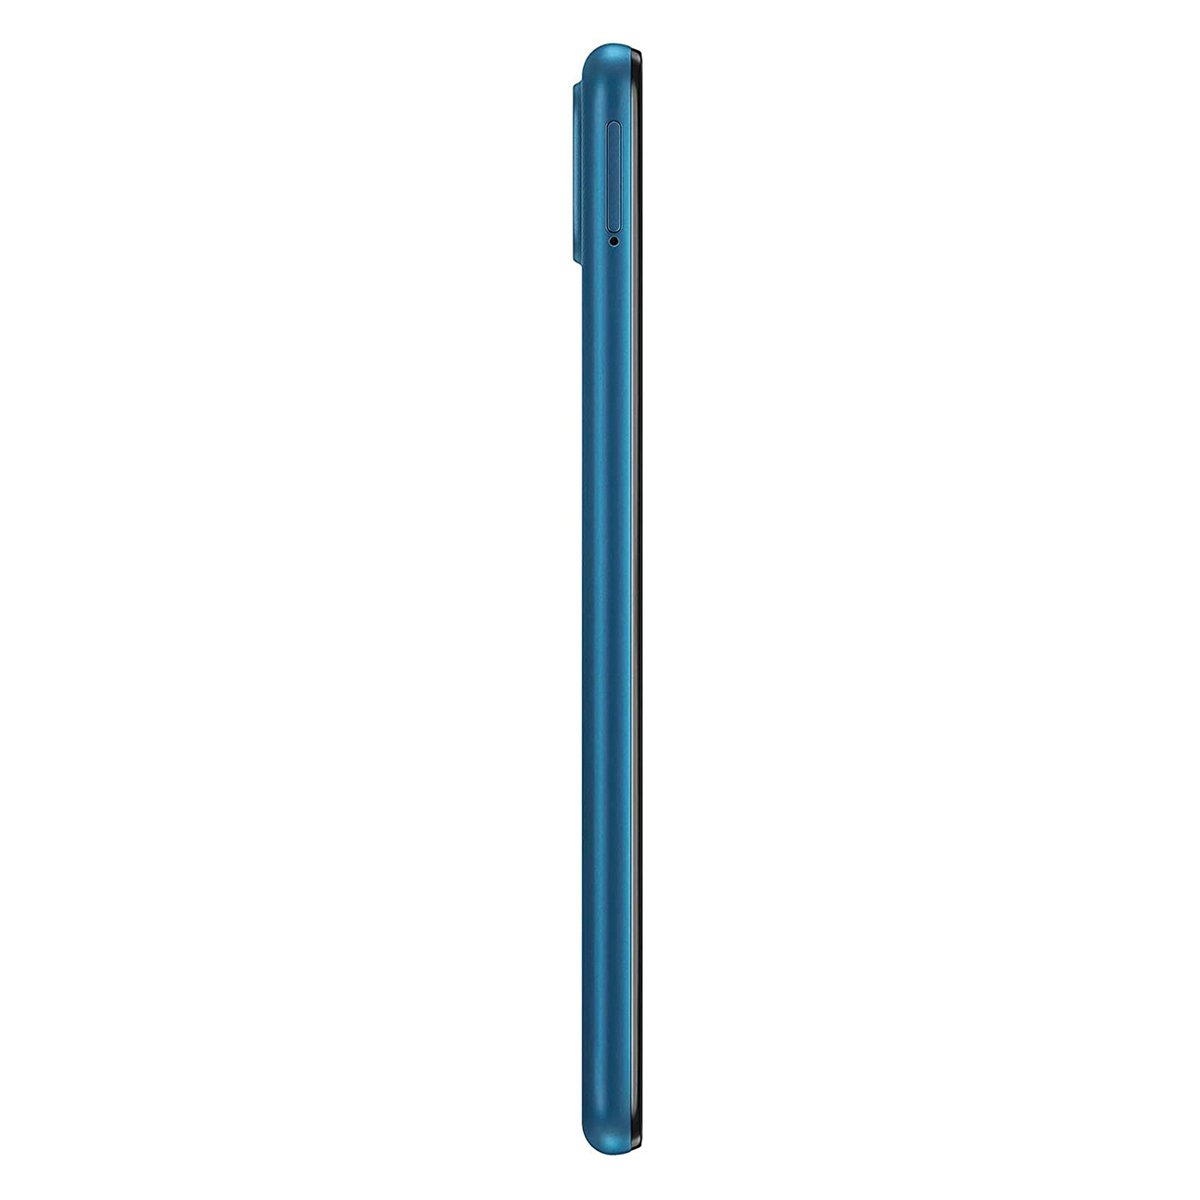 Samsung Galaxy-A12-SMA125FZ 64GB Blue